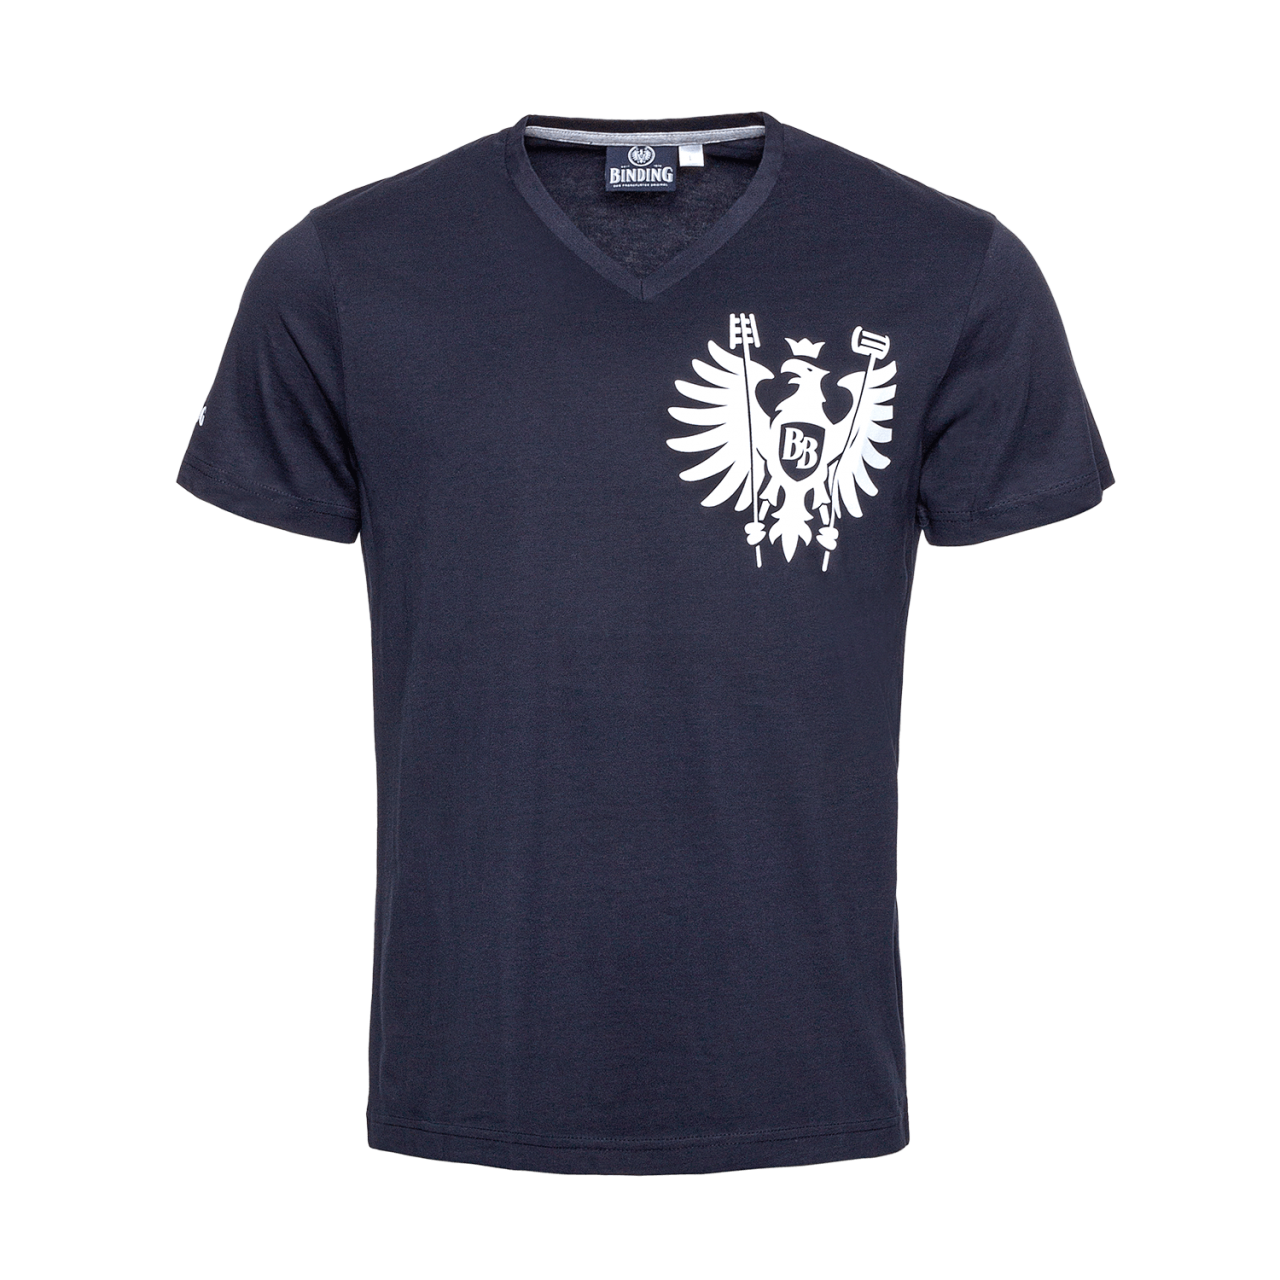 Frontalansicht Binding T-Shirt blau mit Binding Logo in weiß